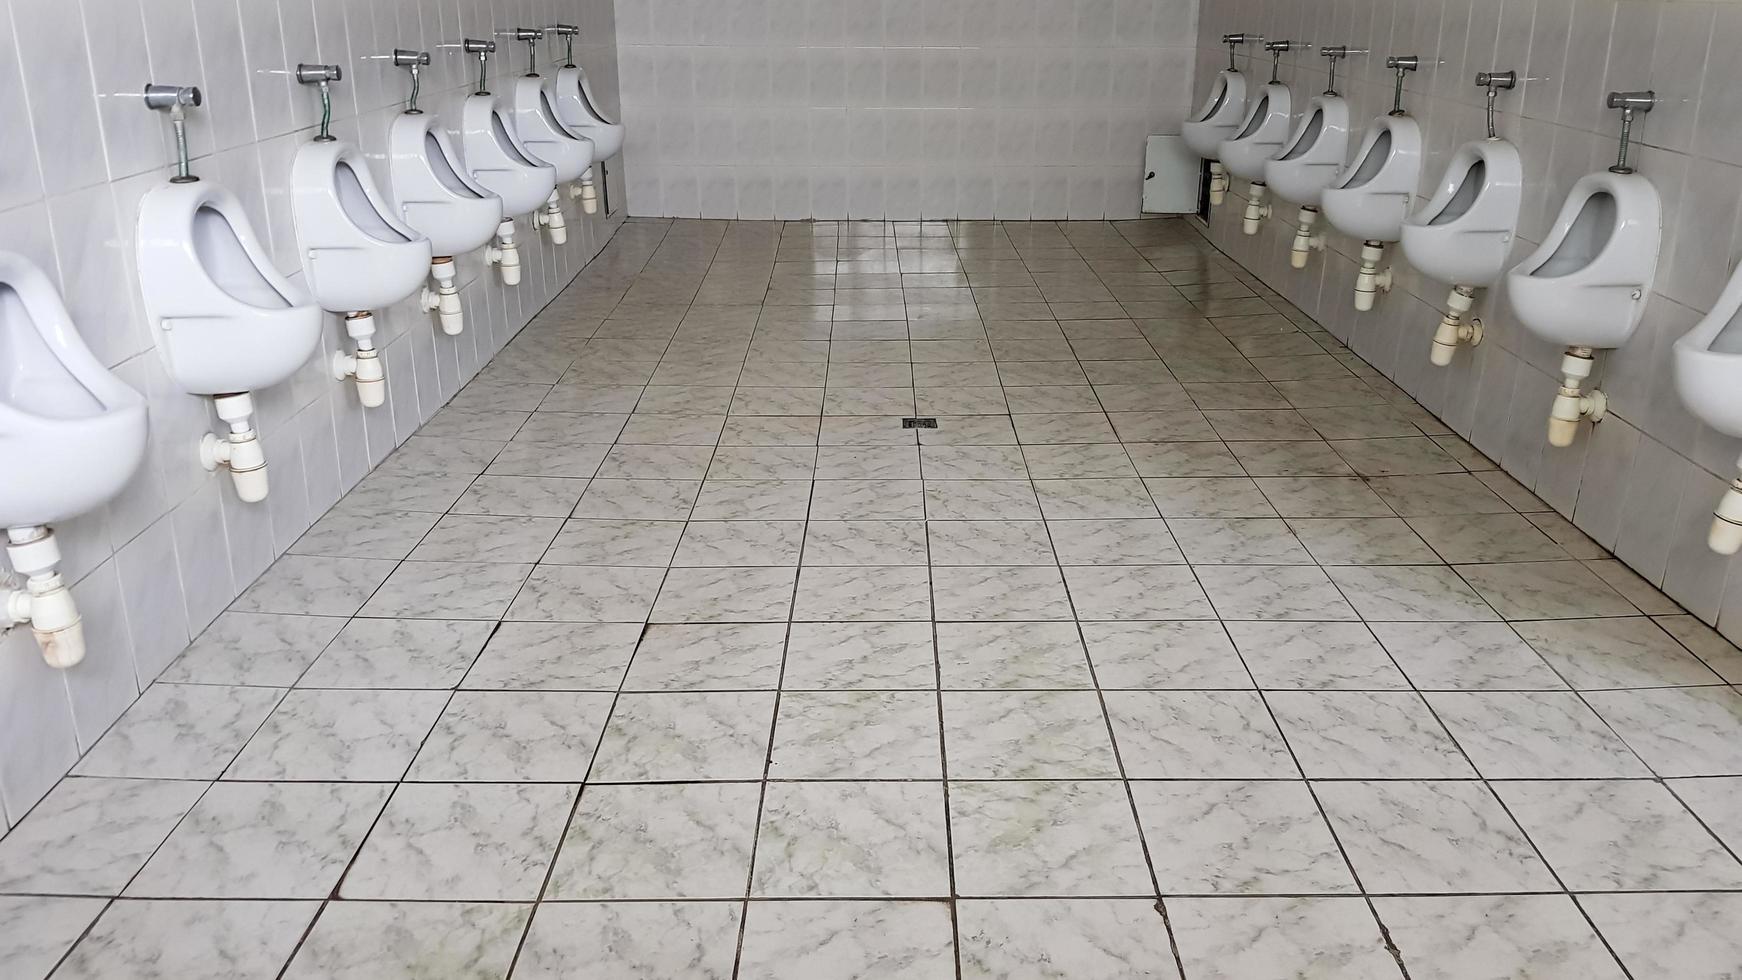 öffentliche Toiletten mit vielen Keramik-Urinalen. große öffentliche Toilette, an der Wand befestigte Schüsseln in der Toilette. Urinale bereiten Schüsseln für Männer vor. foto